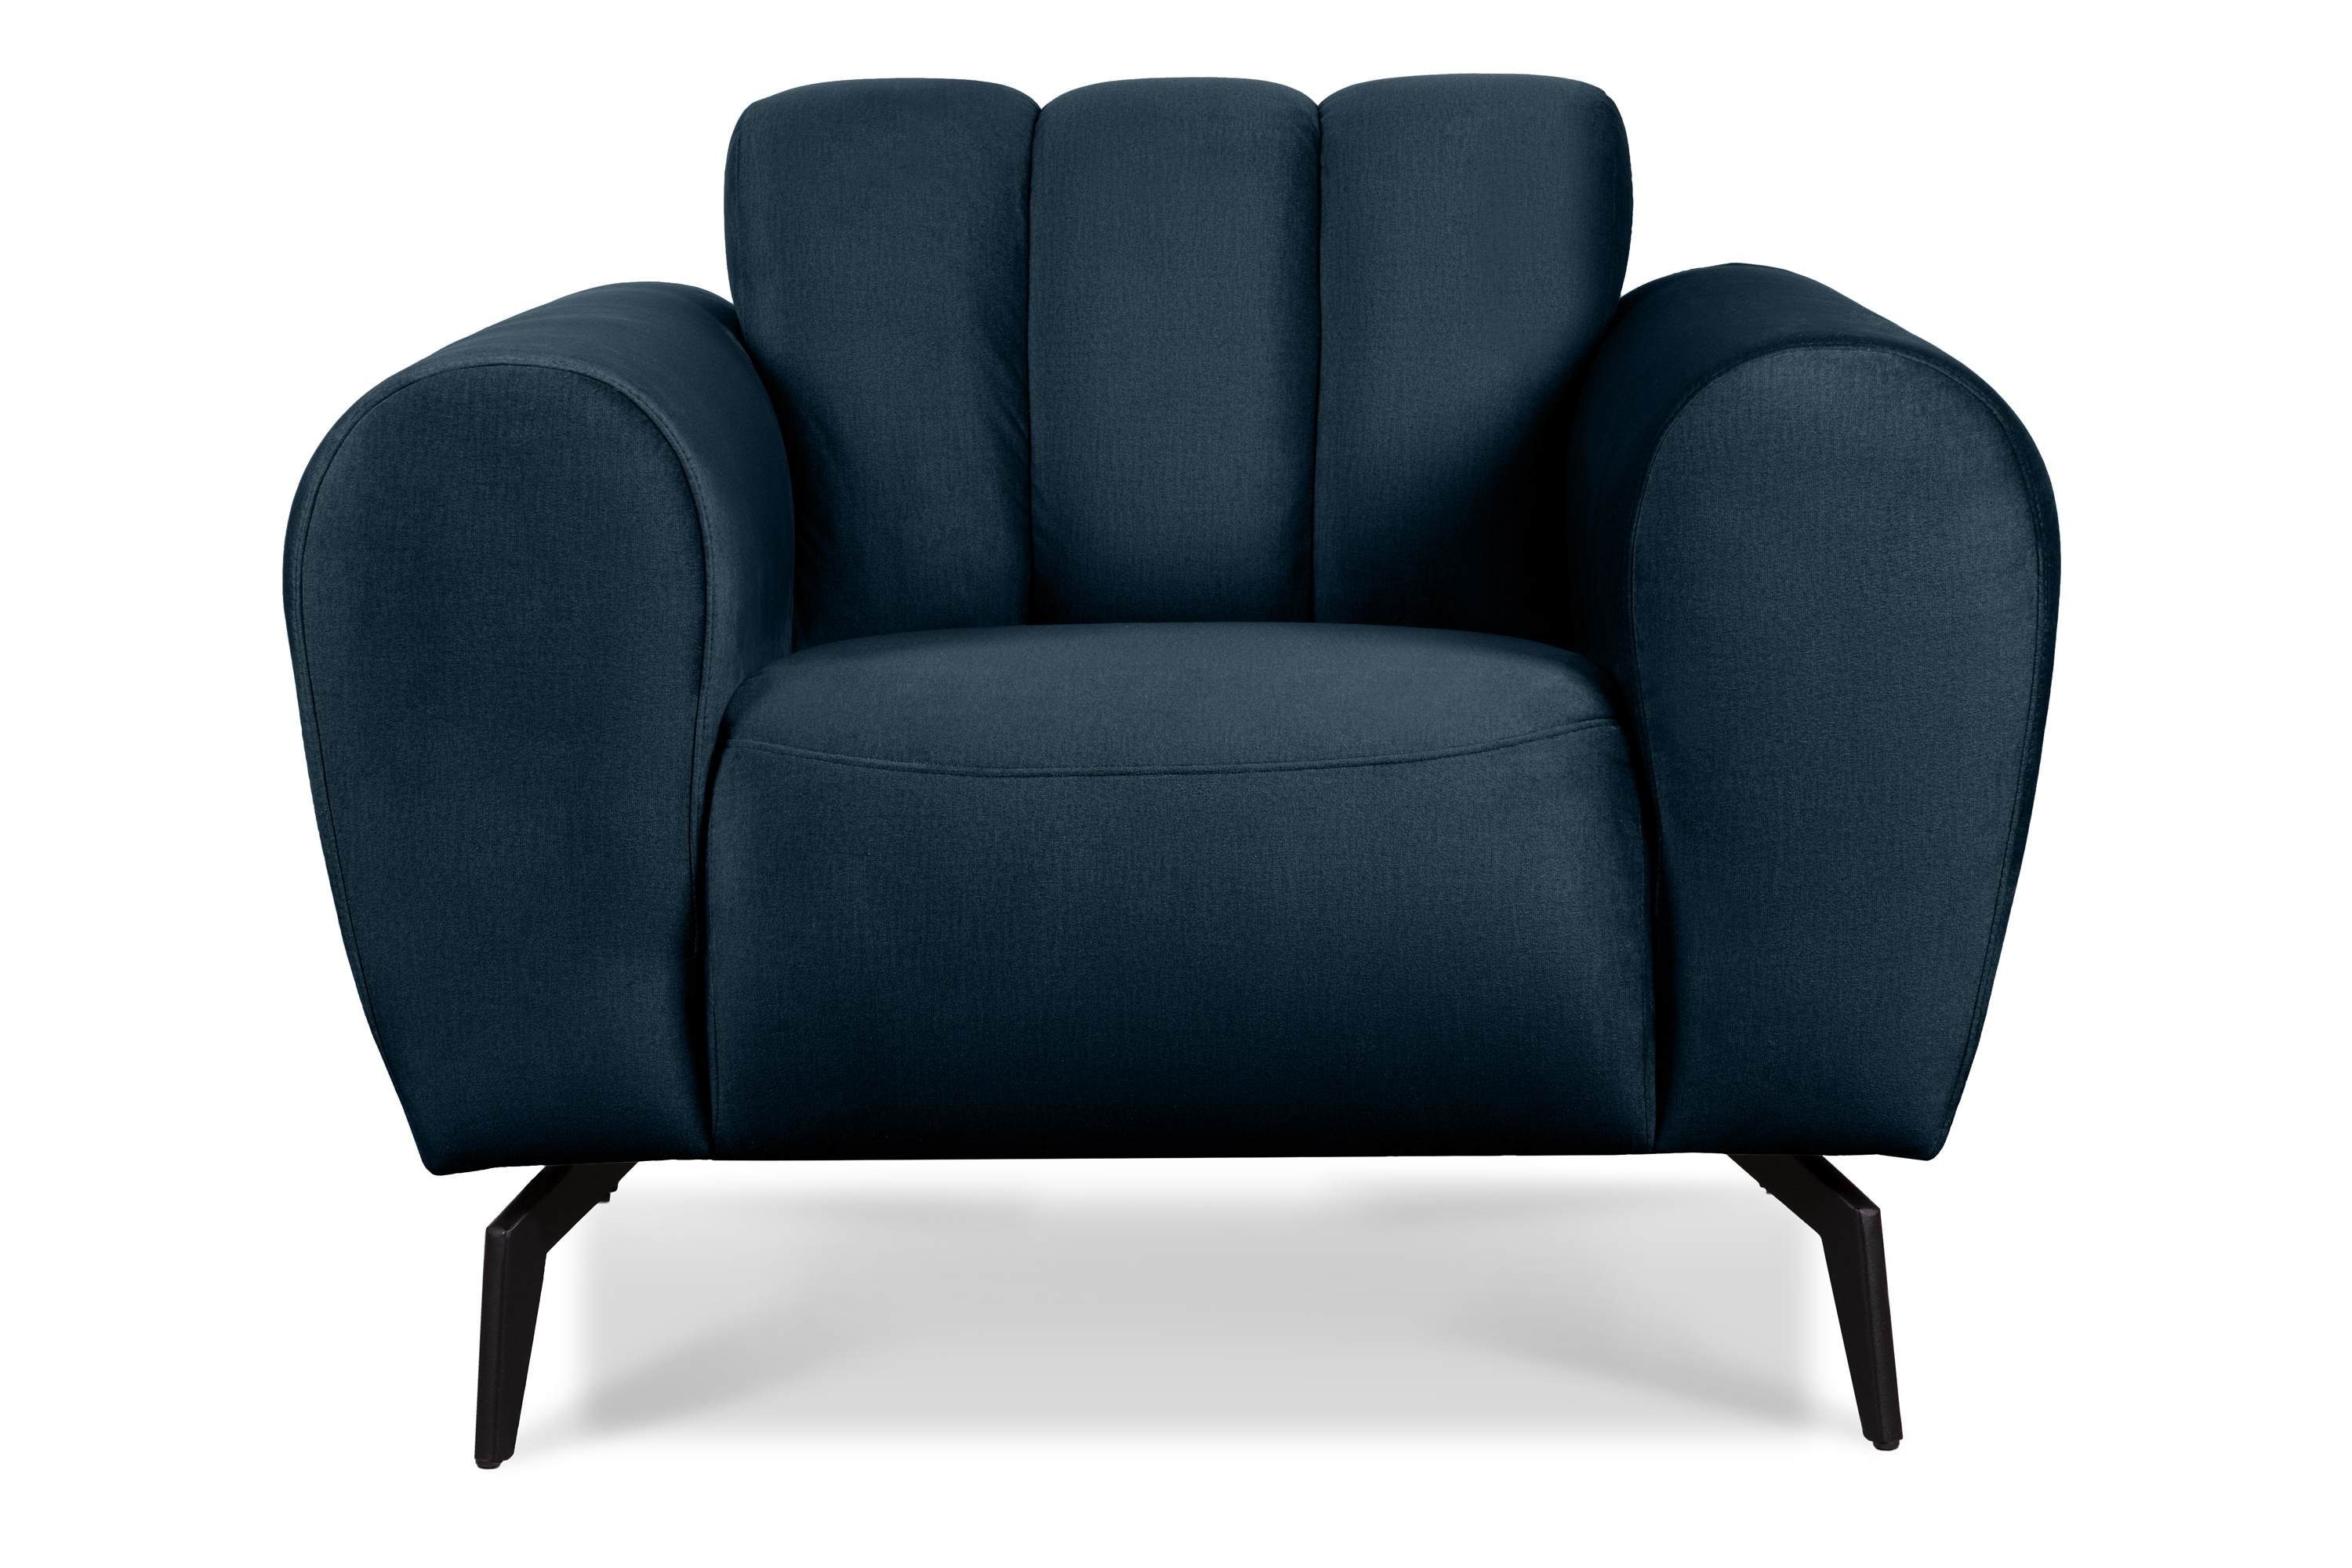 Konsimo Sessel RUBERO mit breiten Armlehnen, Gewebe mit wasserabweisenden Eigenschaften, modernes Design marineblau | marineblau